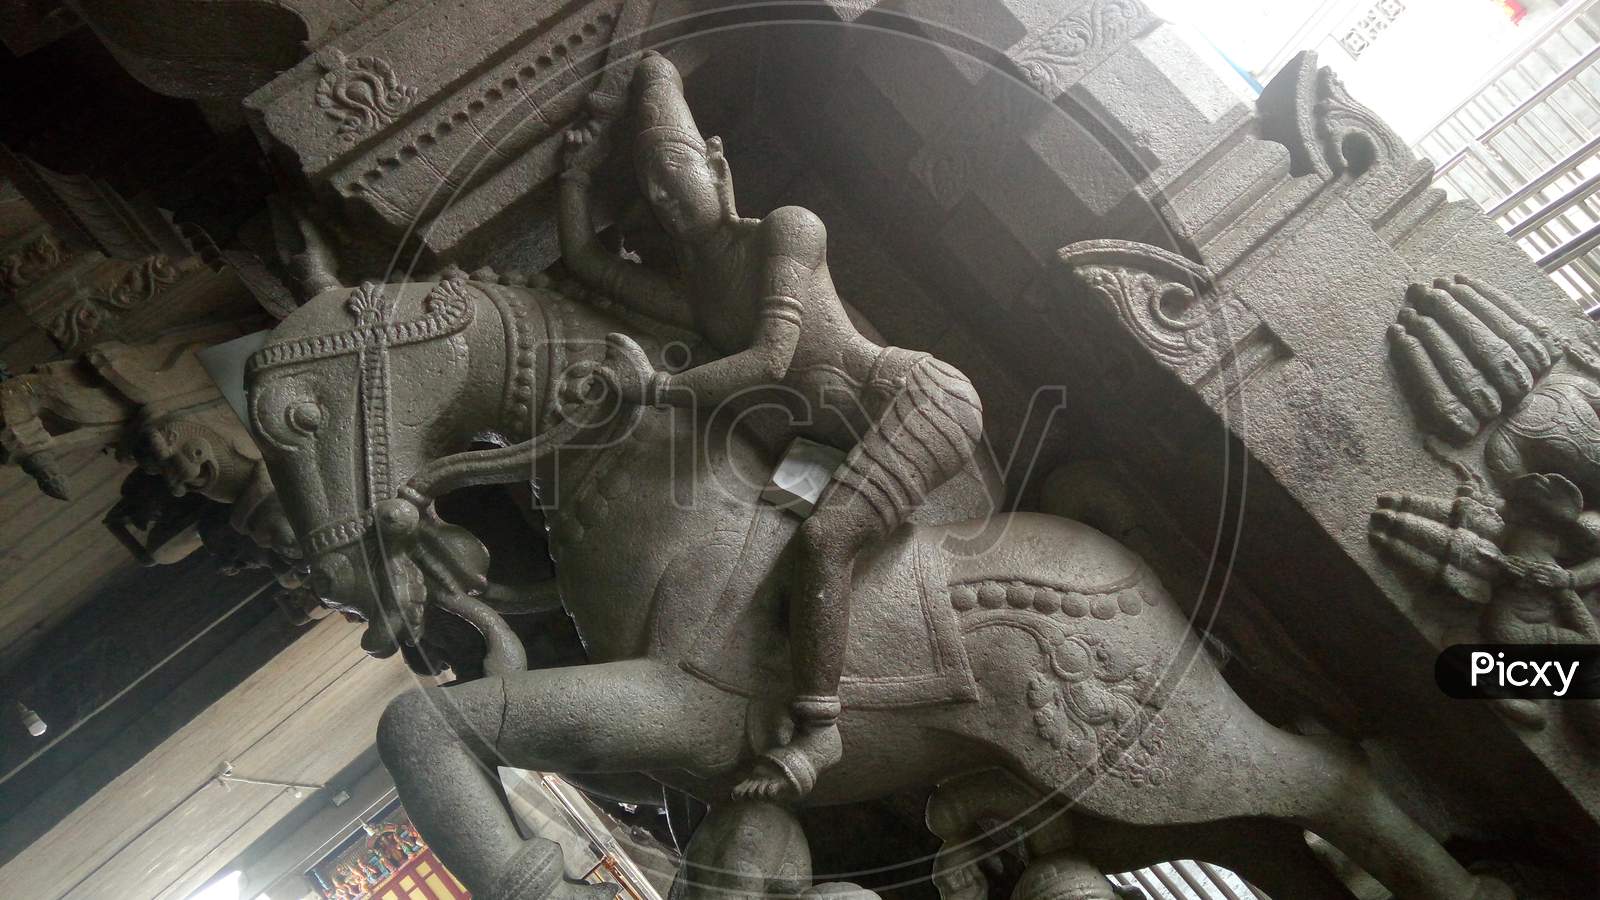 Sculpture in temple colum